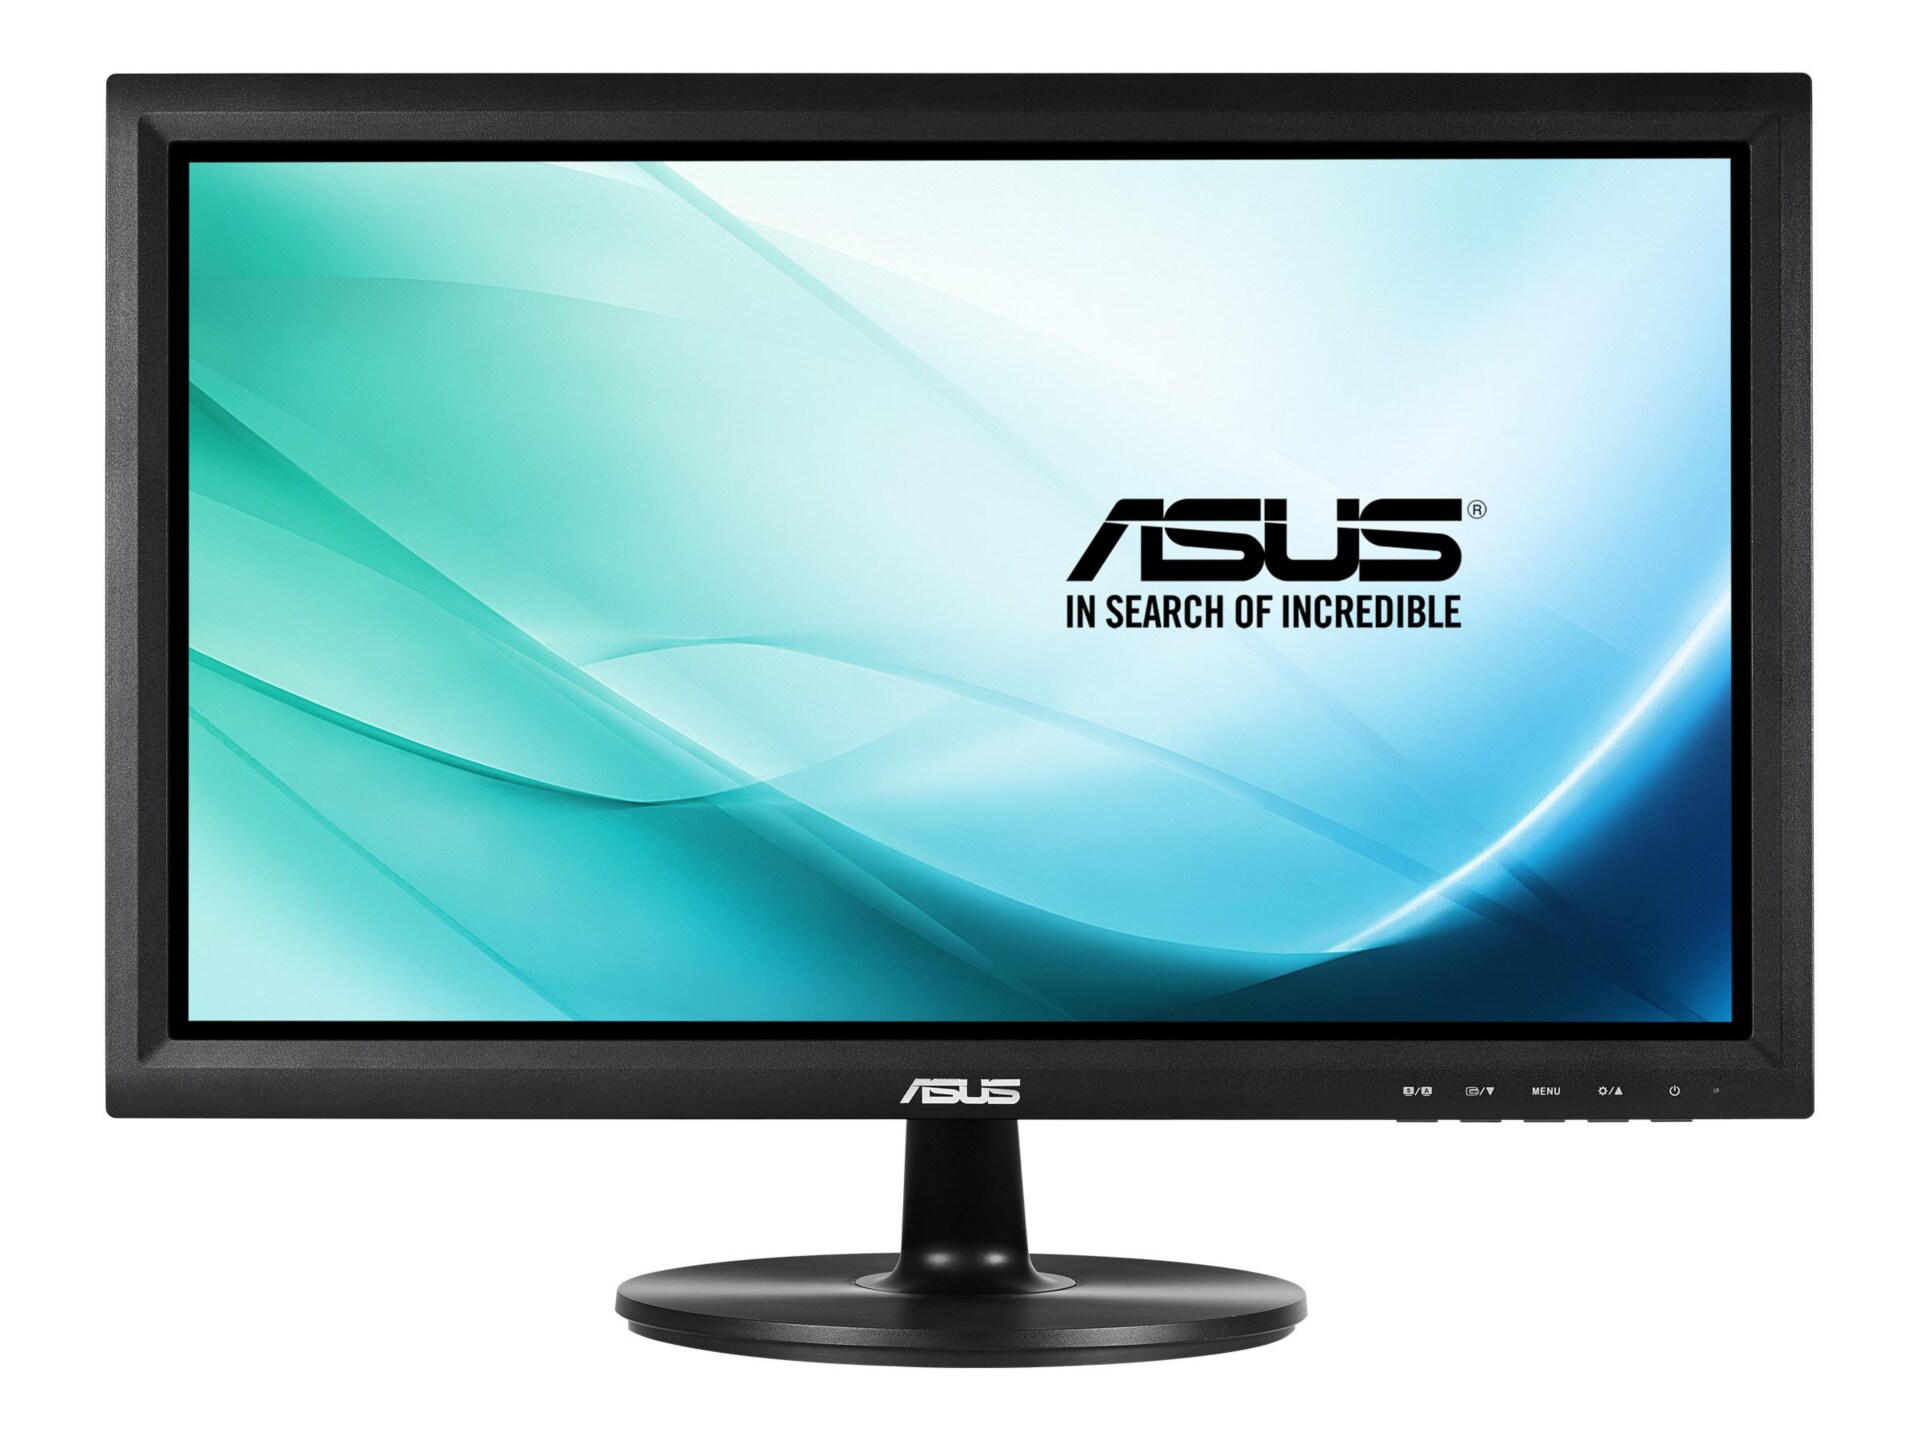 ASUS VT207N - LED monitor - 19.5"